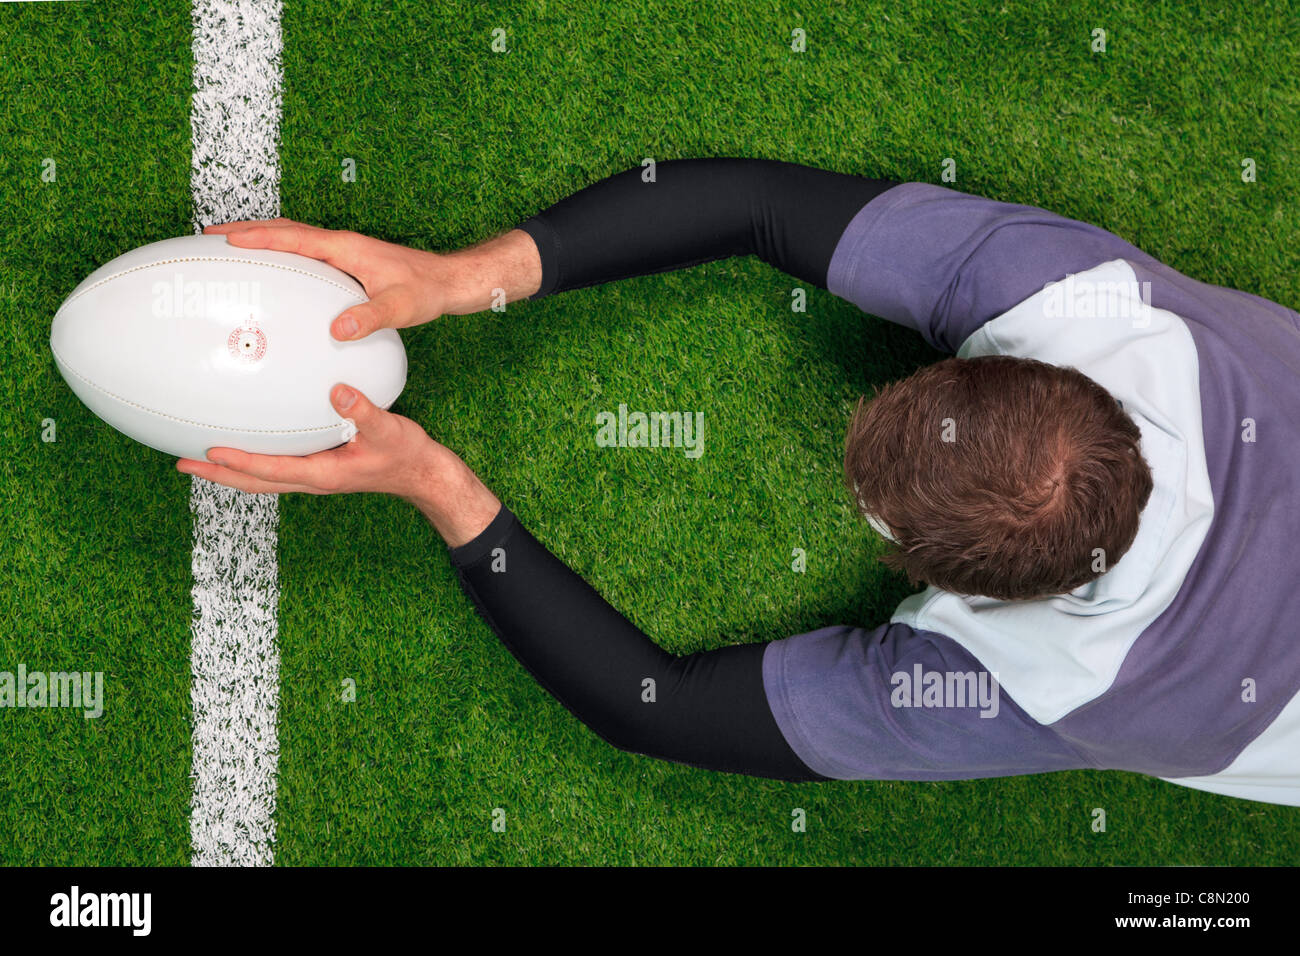 Obenliegende Foto ein Rugby-Spieler Tauchen über die Linie, einen Versuch mit beiden Händen, mit dem Ball zu erzielen. Stockfoto